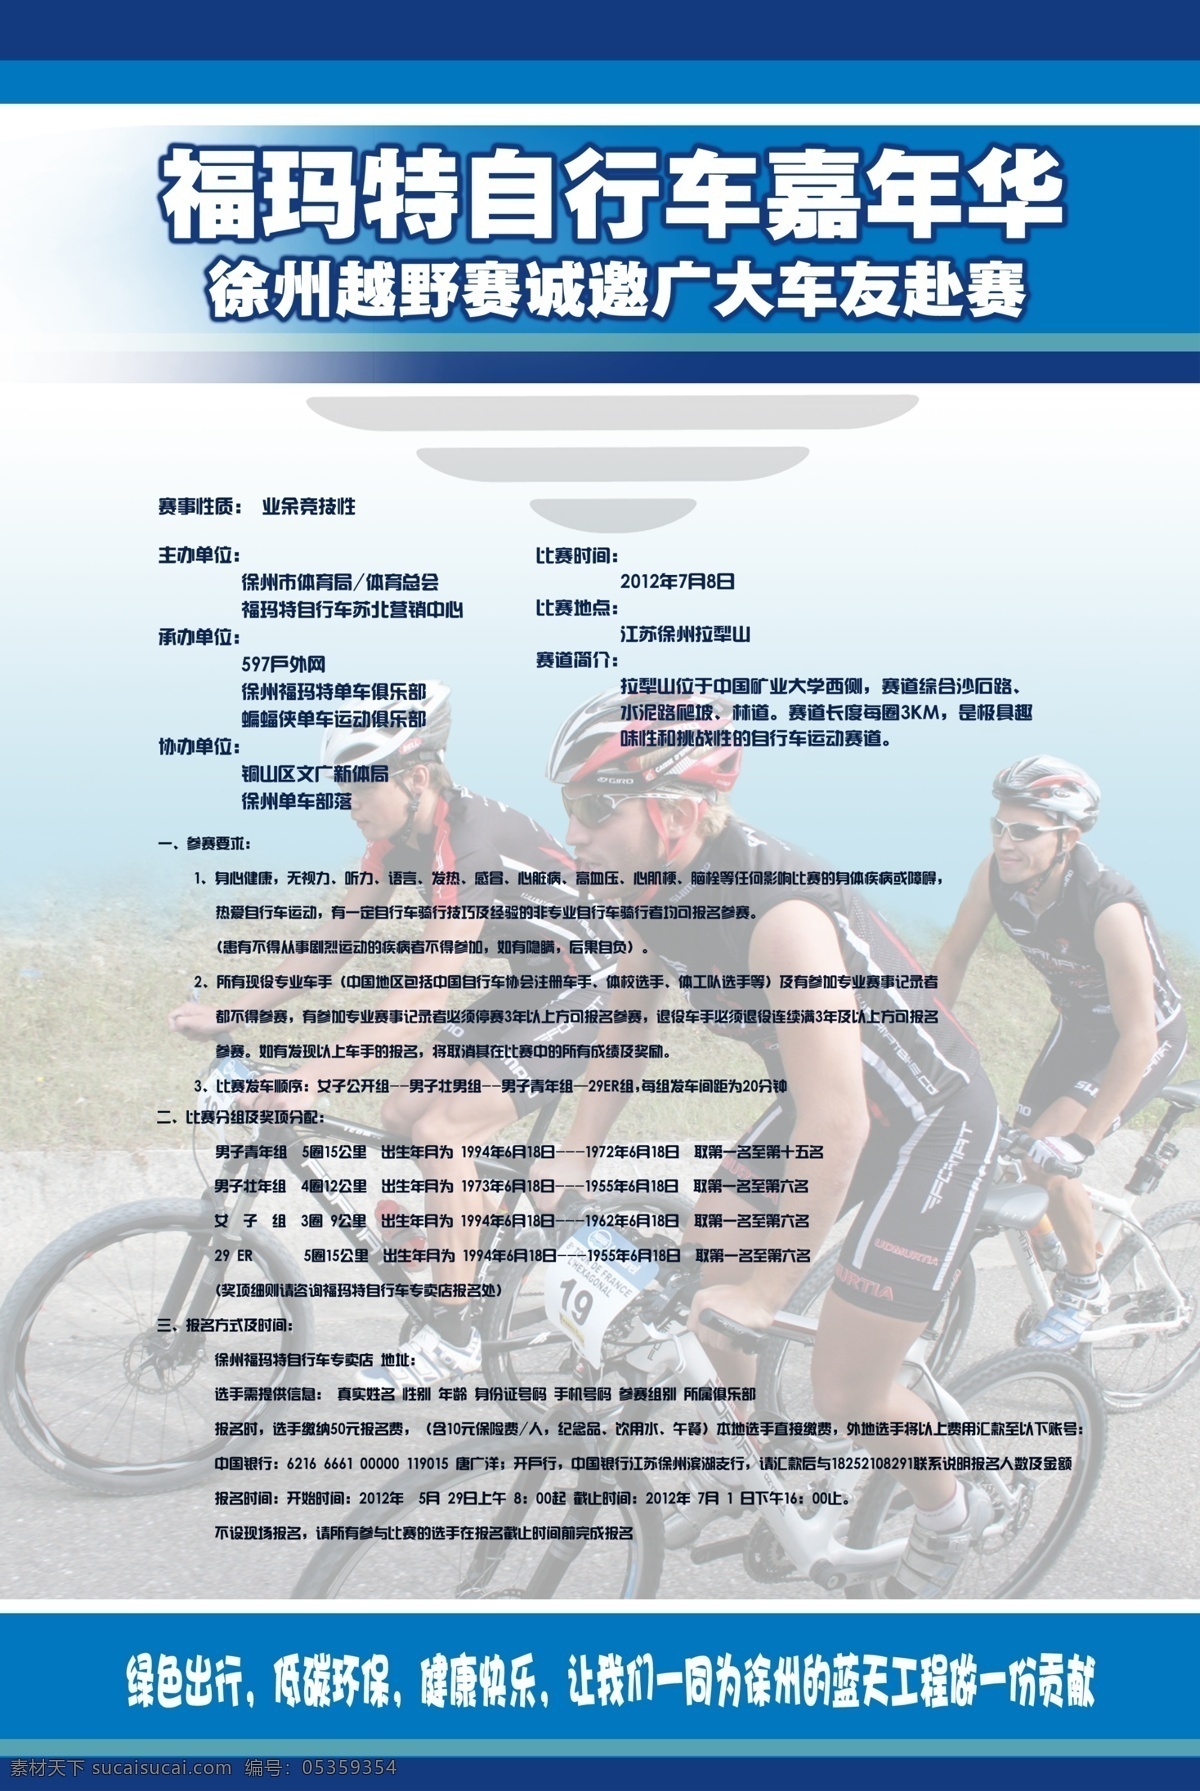 自行车 比赛 宣传海报 宣传 海报 福玛特 嘉年华 广告设计模板 源文件